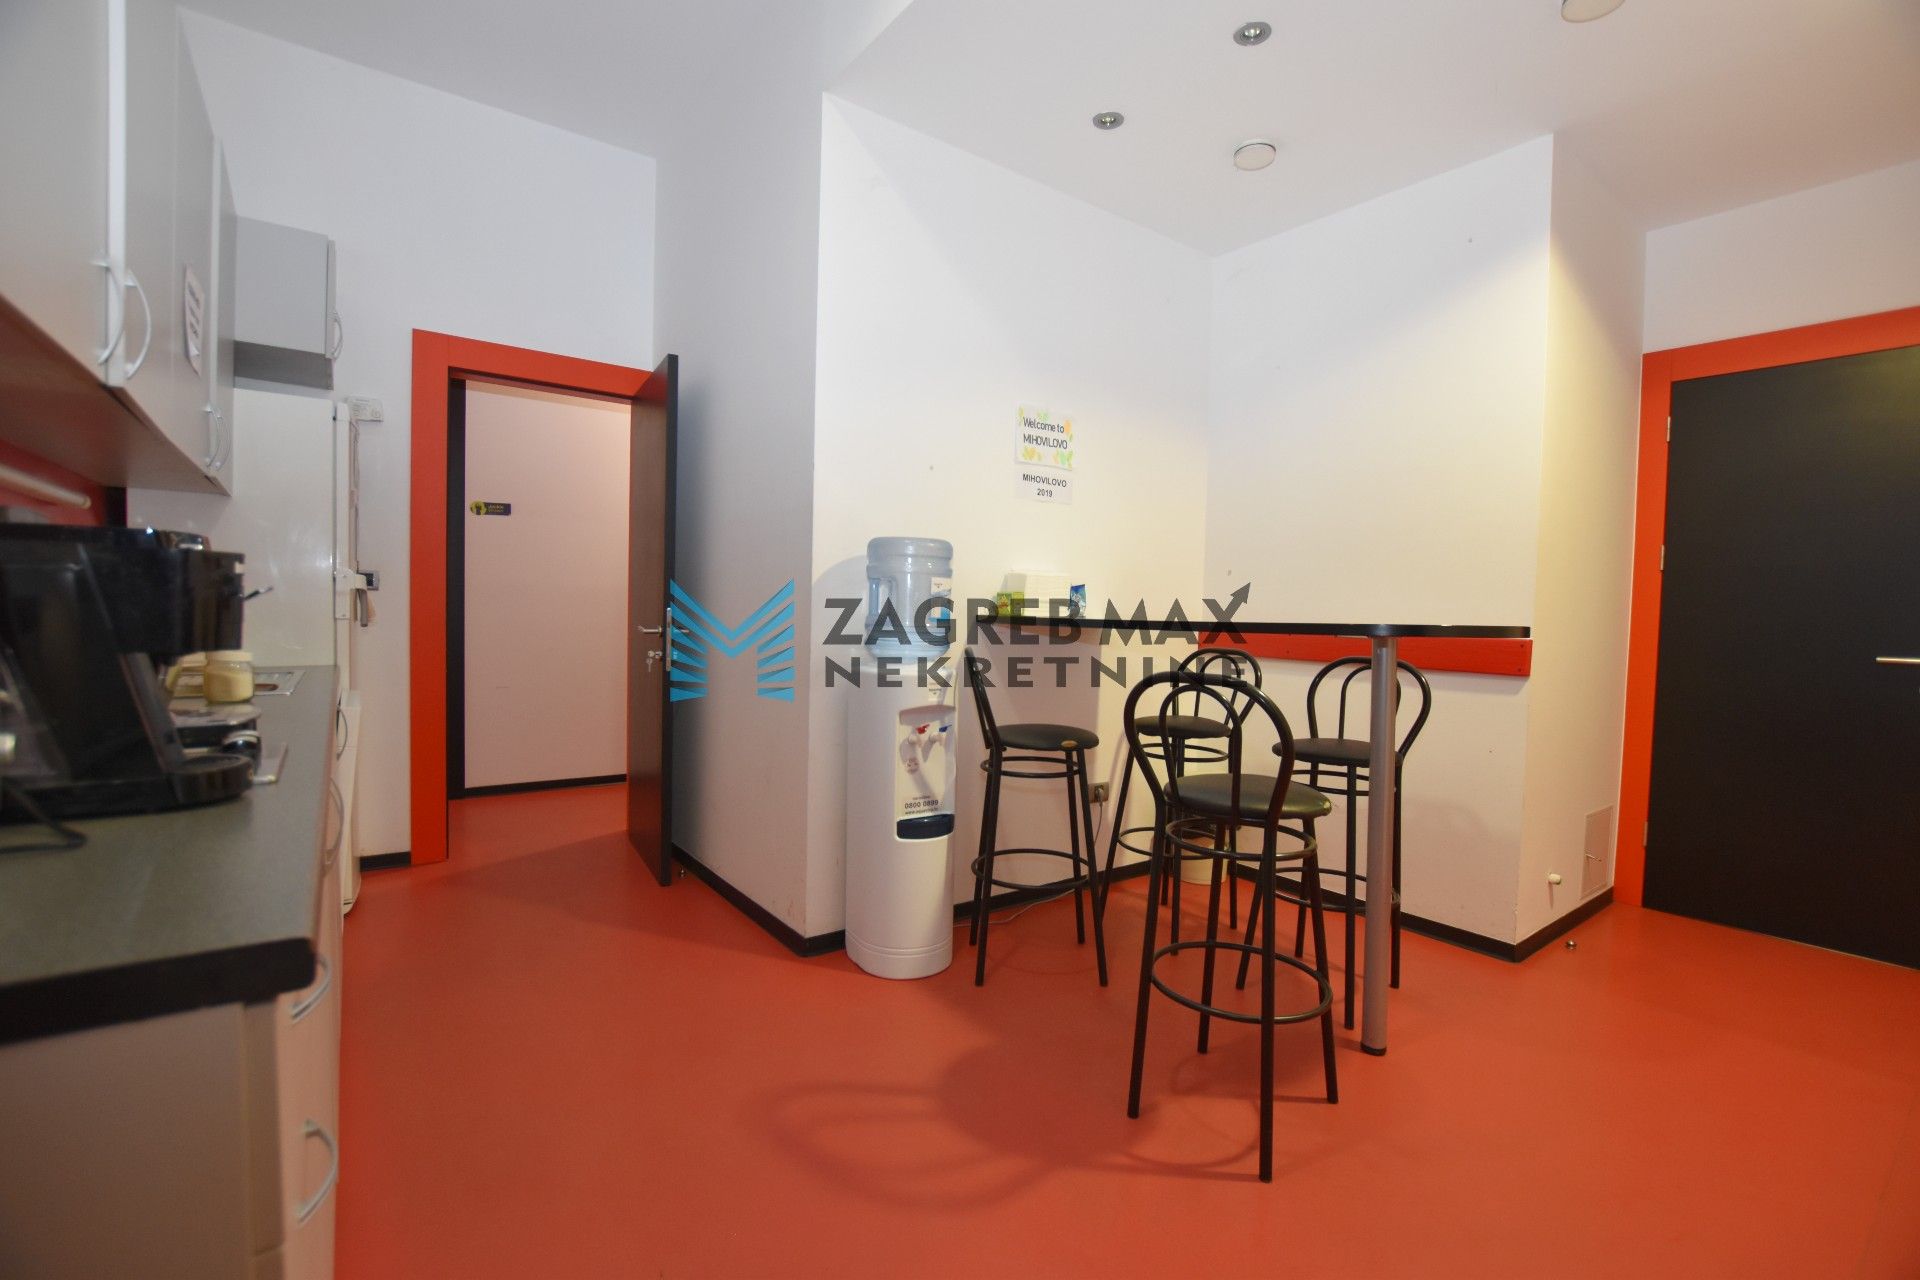 Zagreb - LANIŠTE Moderan uredski prostor od 330 m2, parking 13x, odlična lokacija, BEZ PROVIZIJE